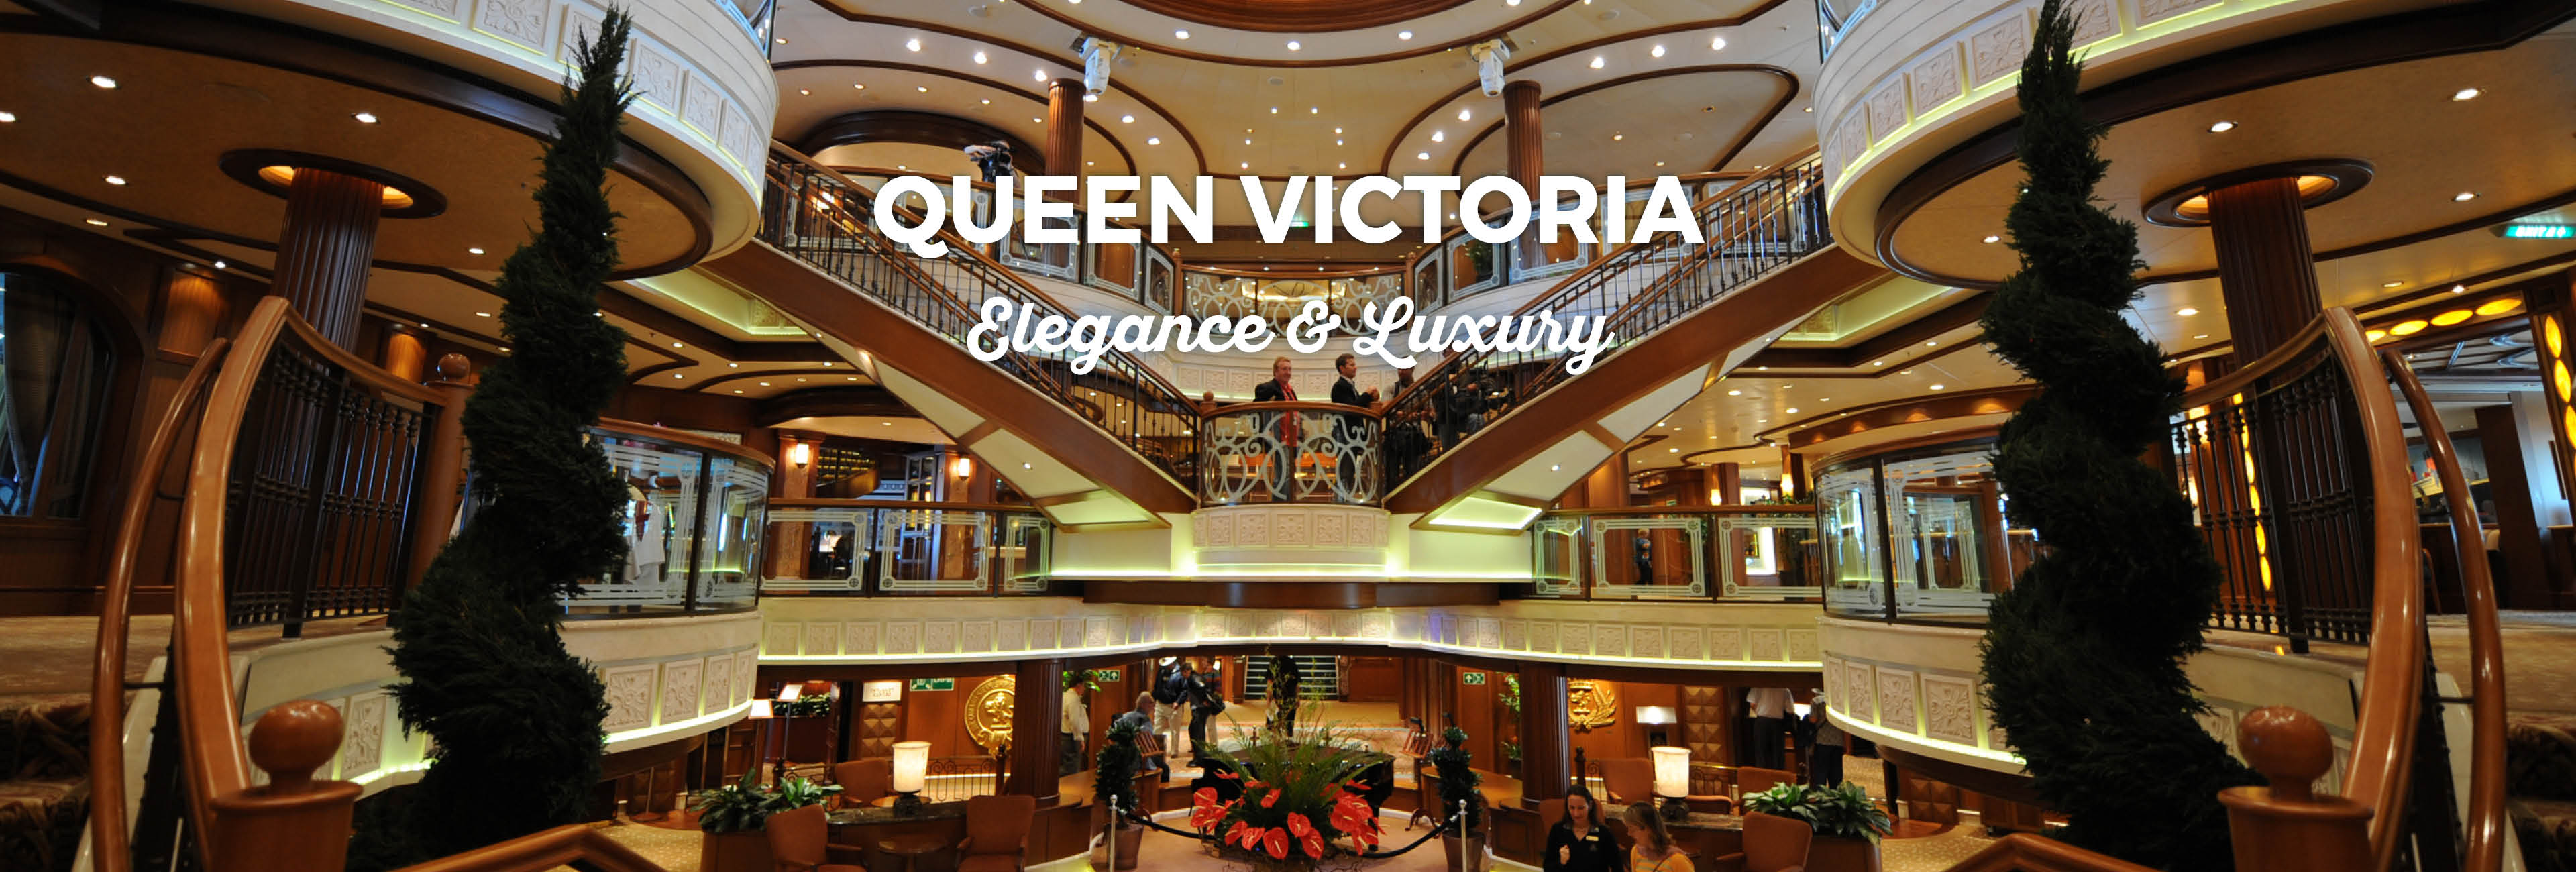 queen victoria cruise deals